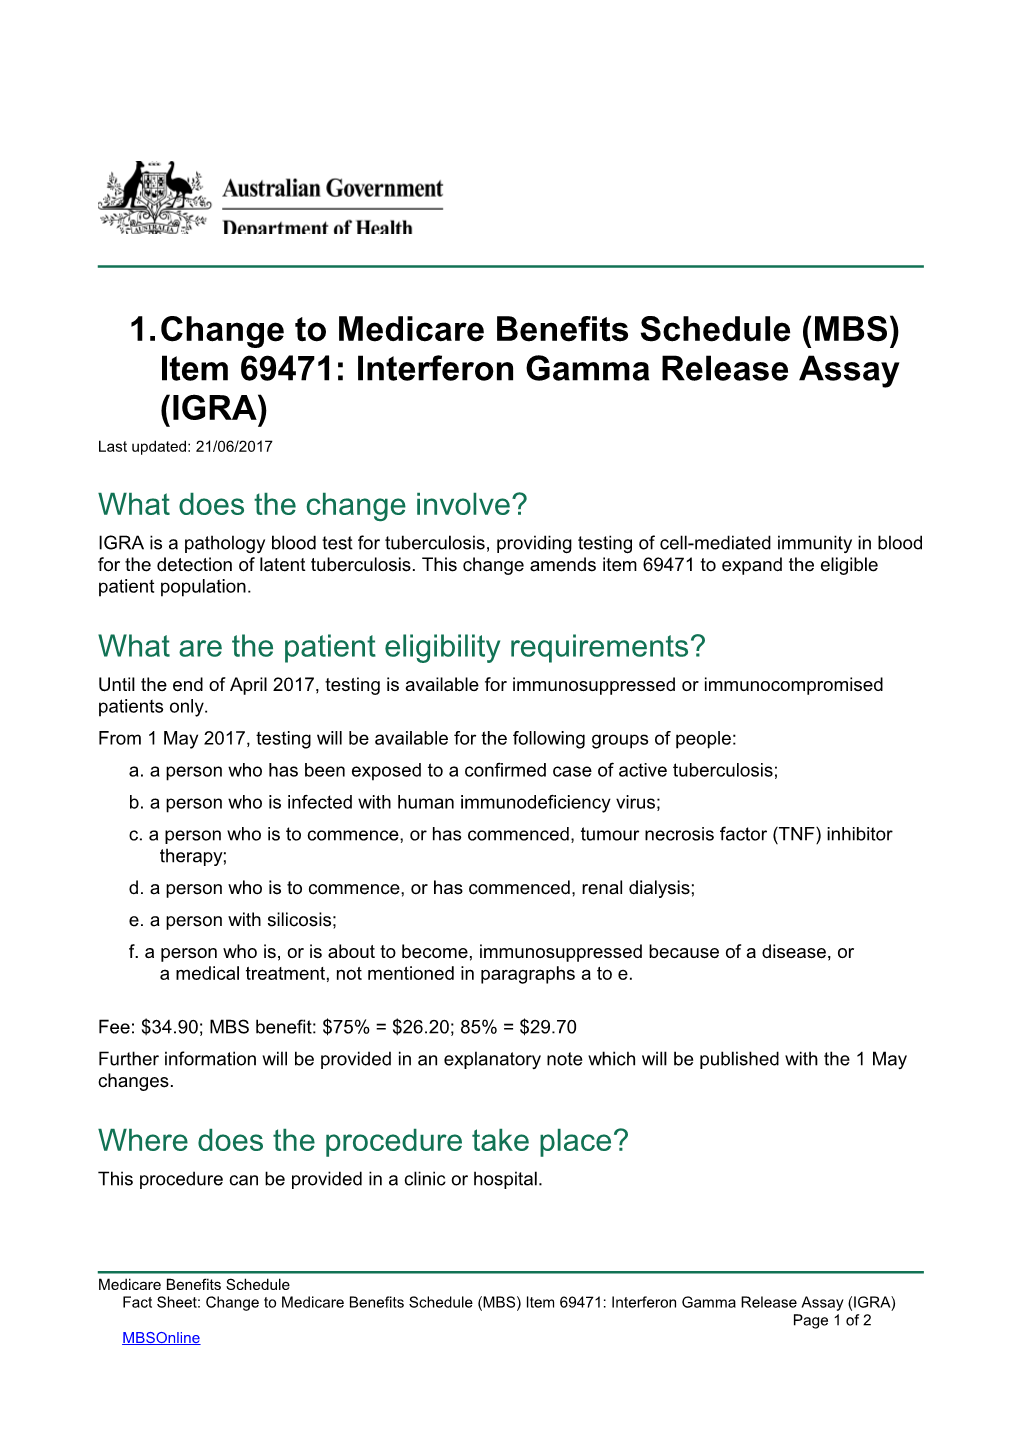 Change to Medicare Benefits Schedule (MBS) Item 69471: Interferon Gamma Release Assay (IGRA)